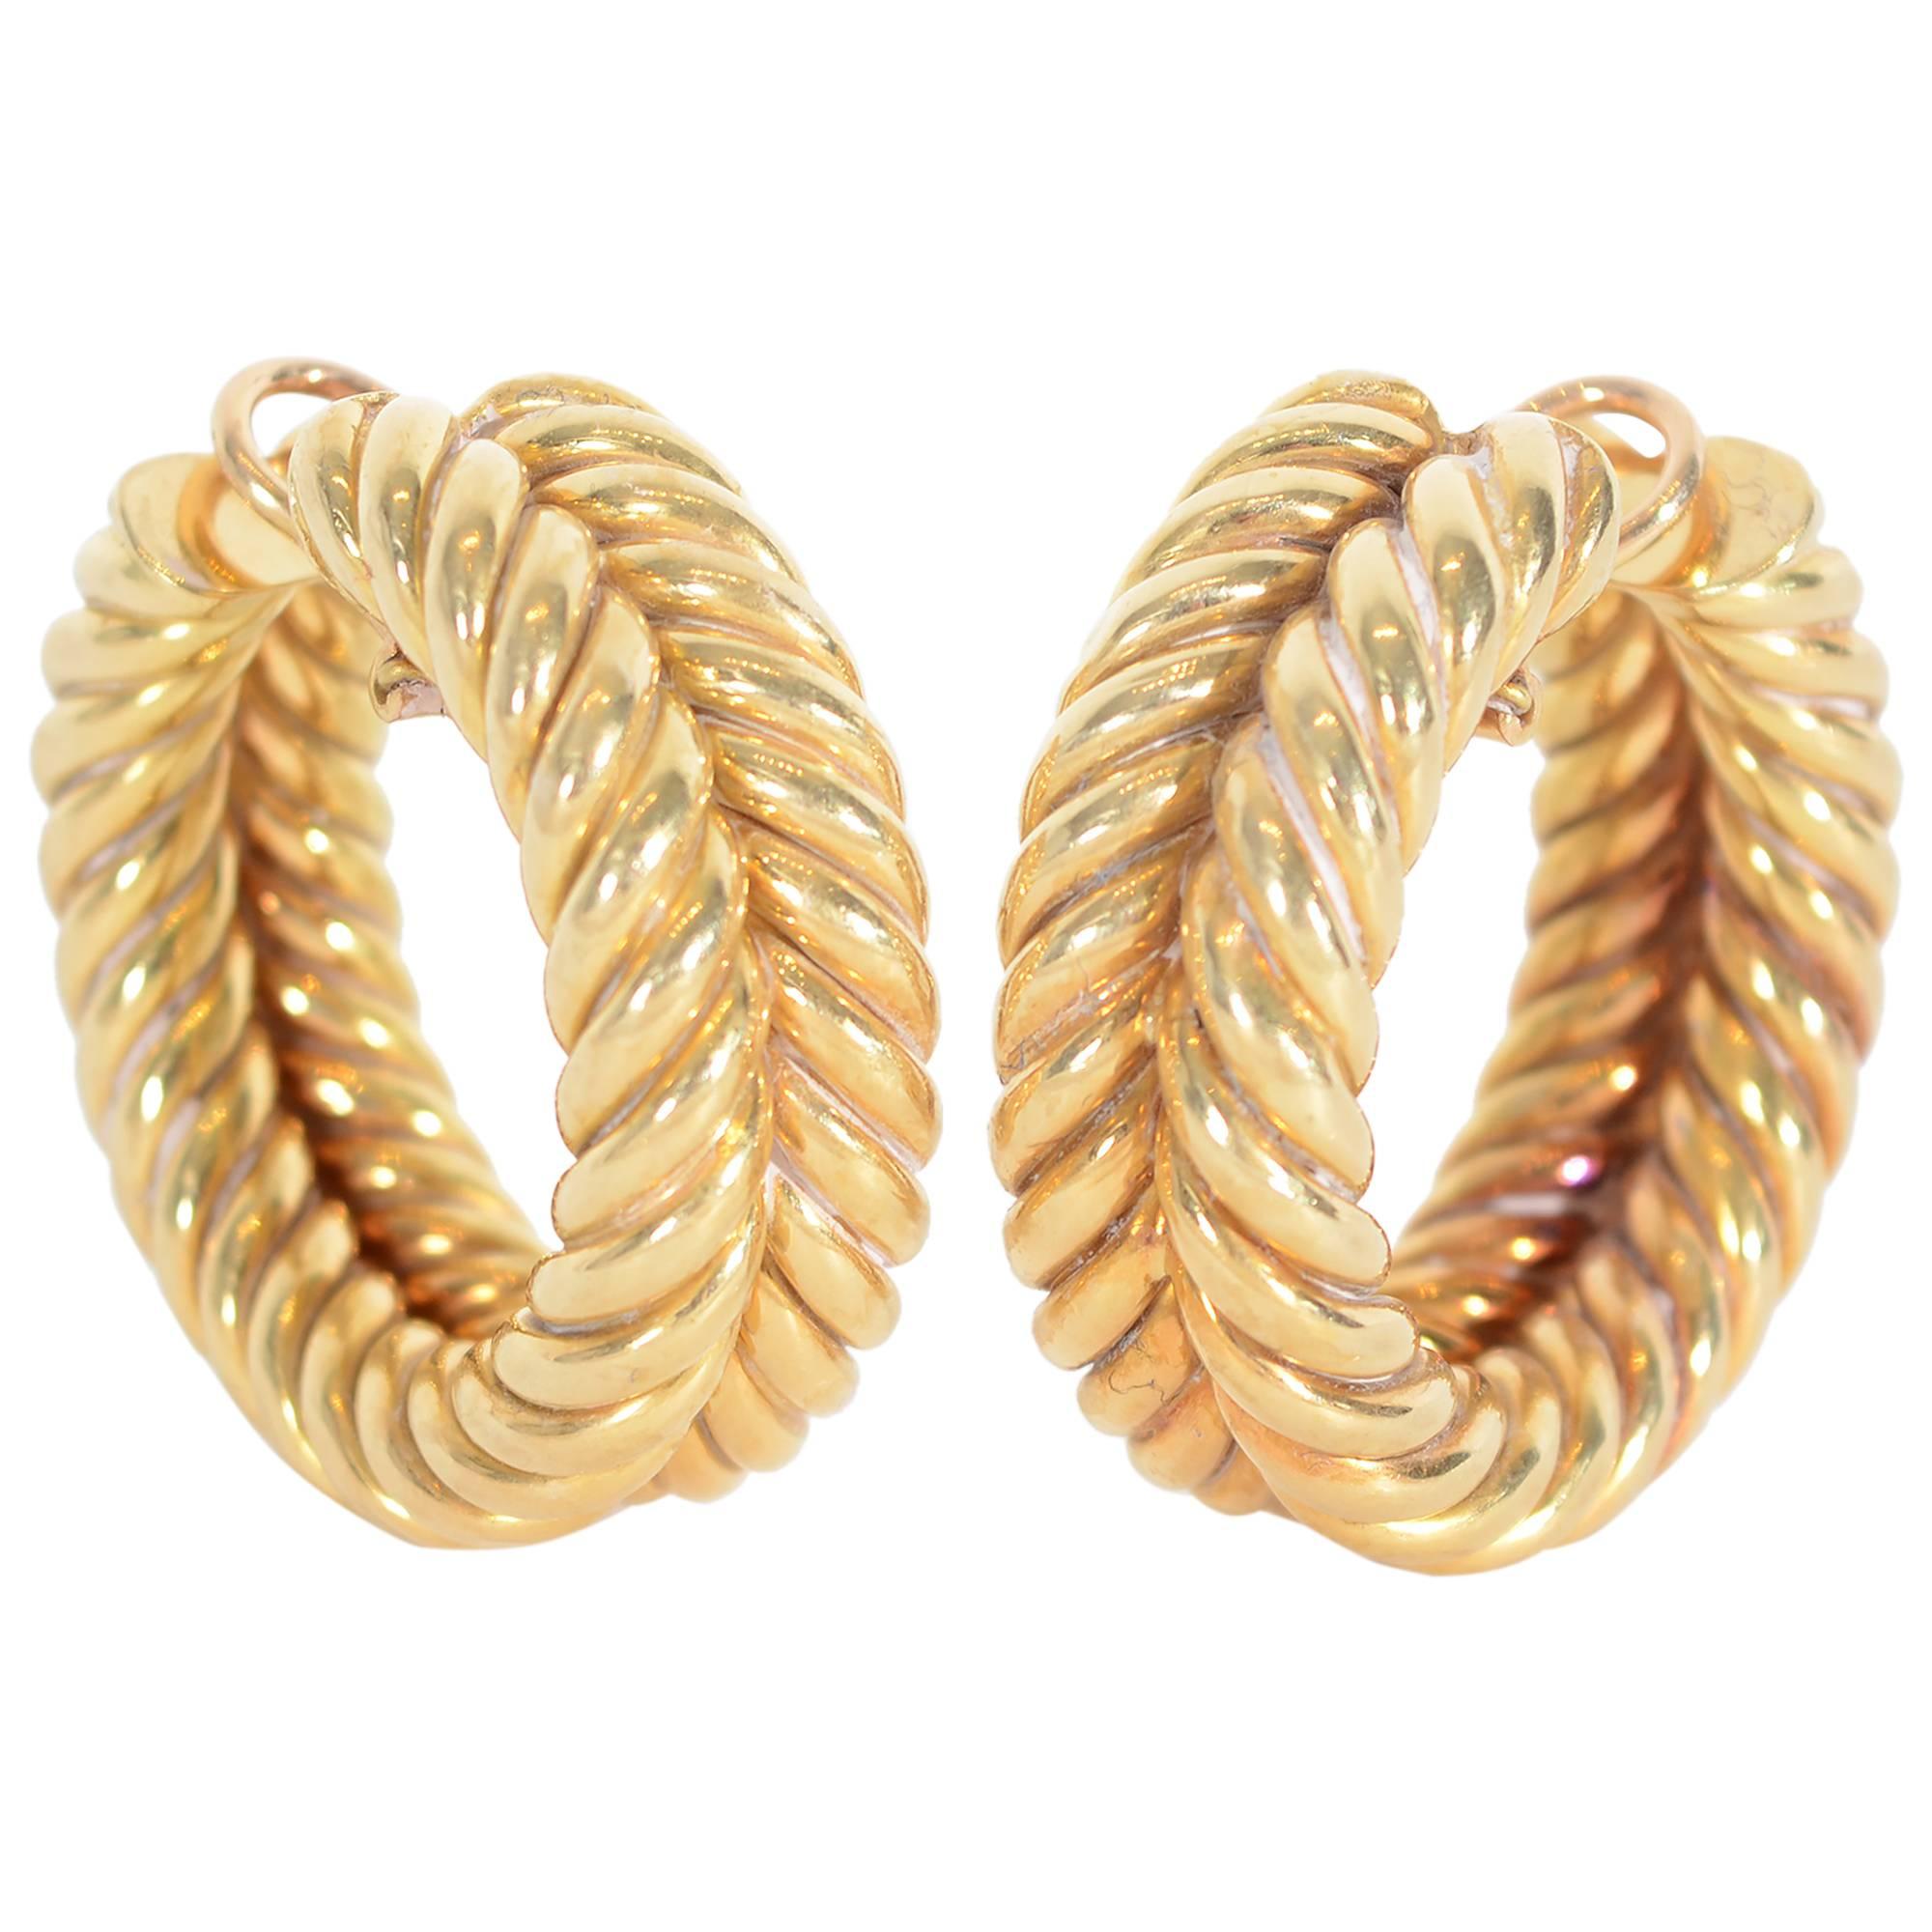 Hammerman Brothers Huge Twisted Gold Hoop Earrings